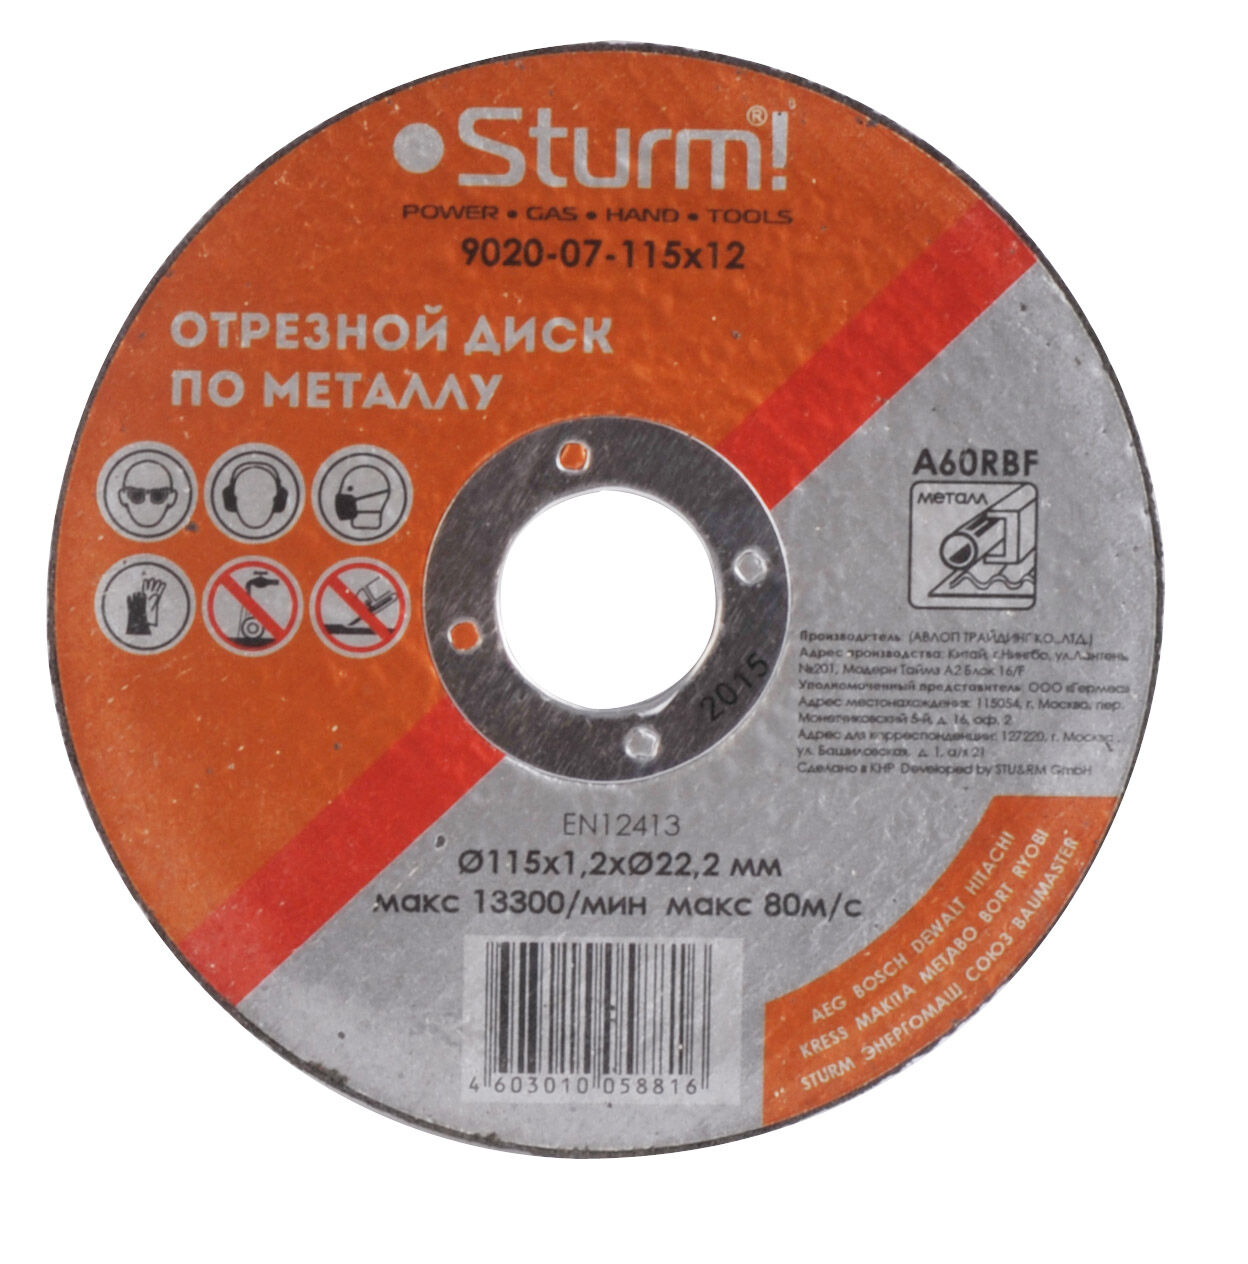 Отрезной диск по металлу Sturm 9020-07-115x12 Sturm!